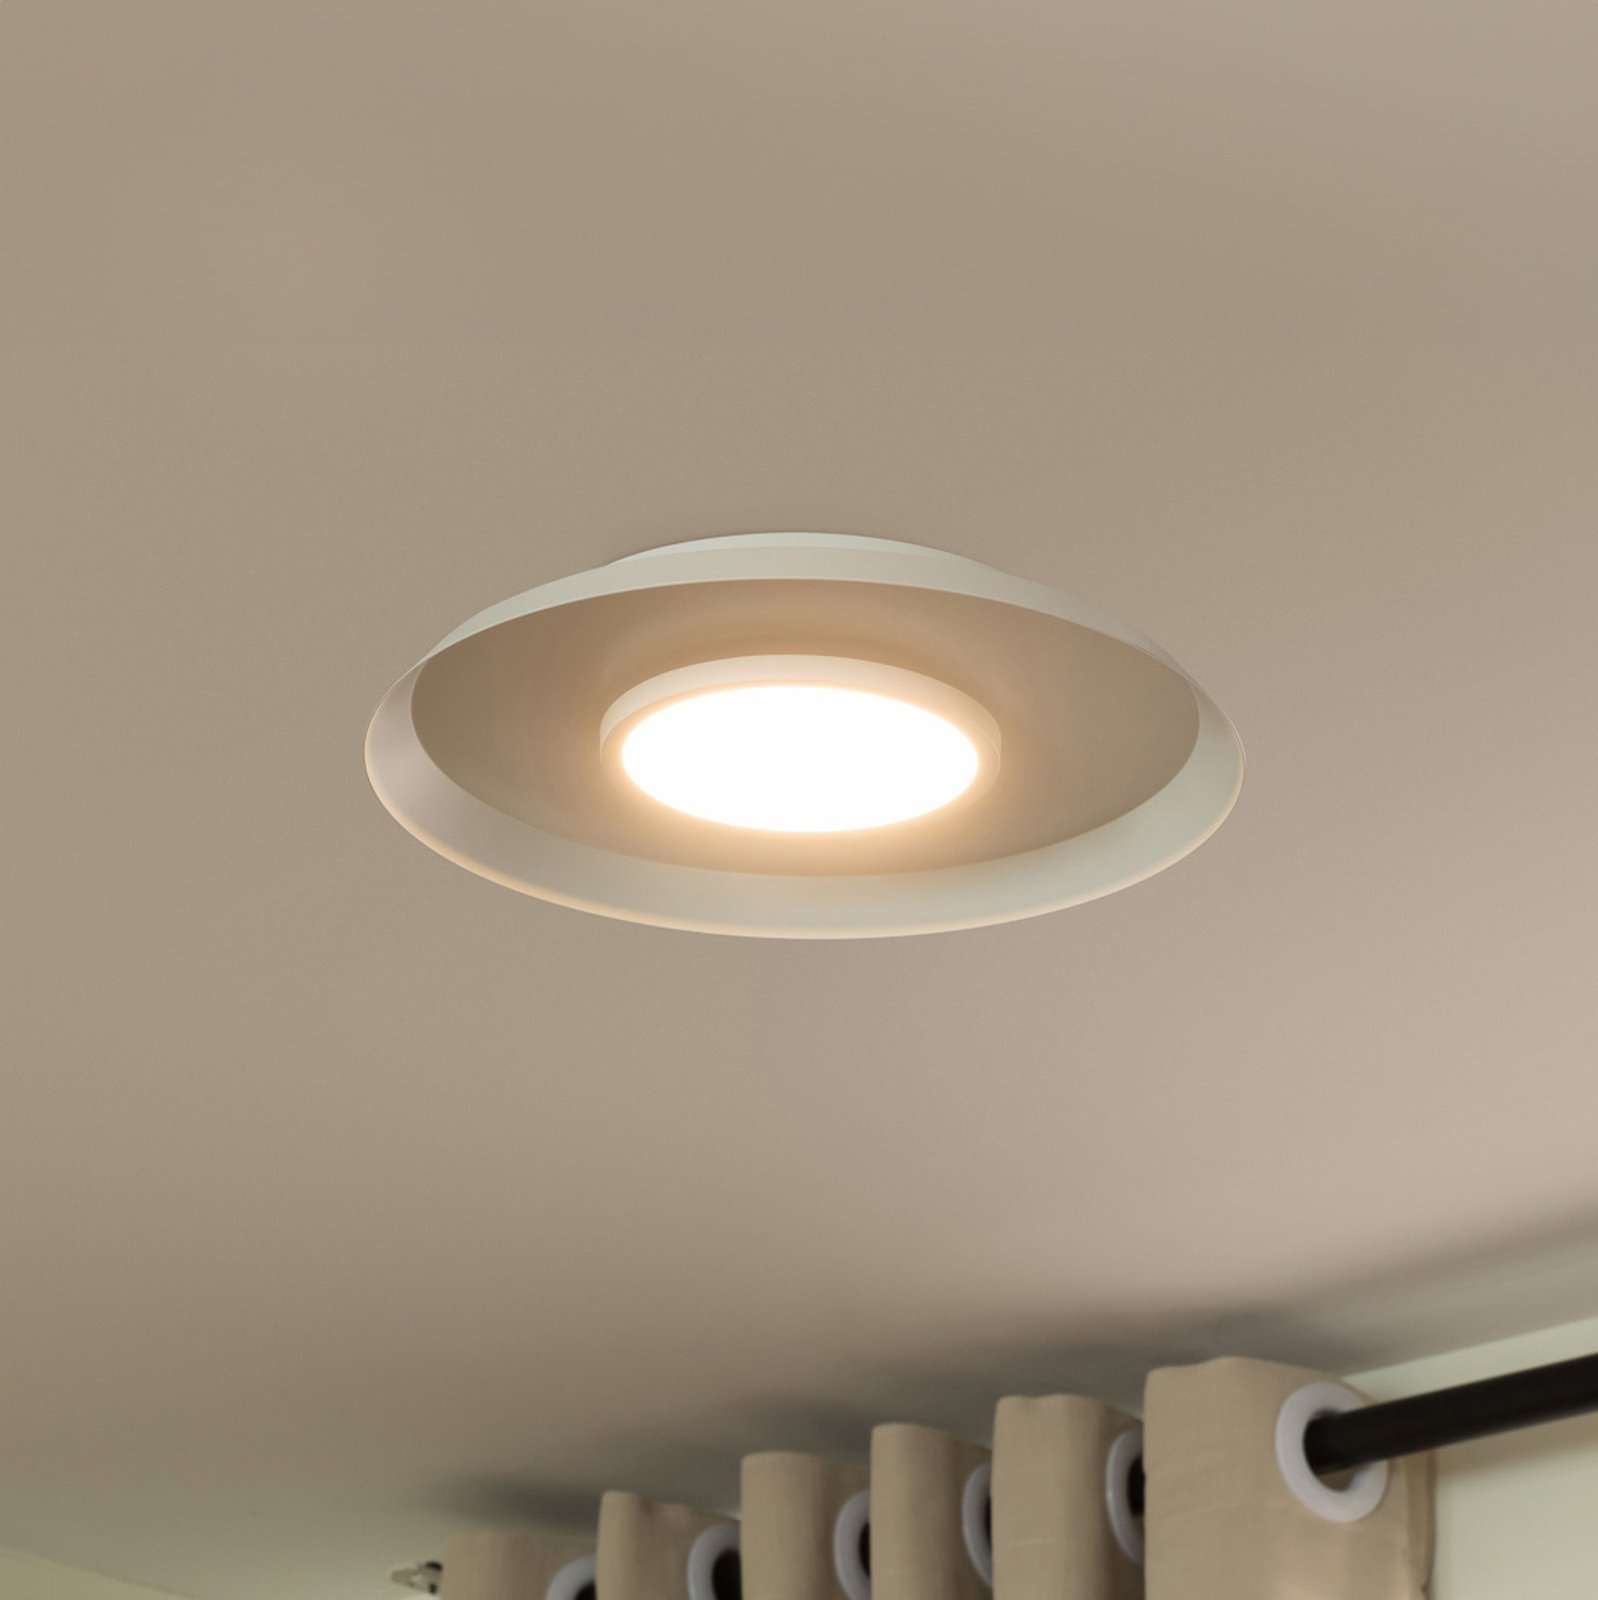 Lucande Merilla ceiling light, white